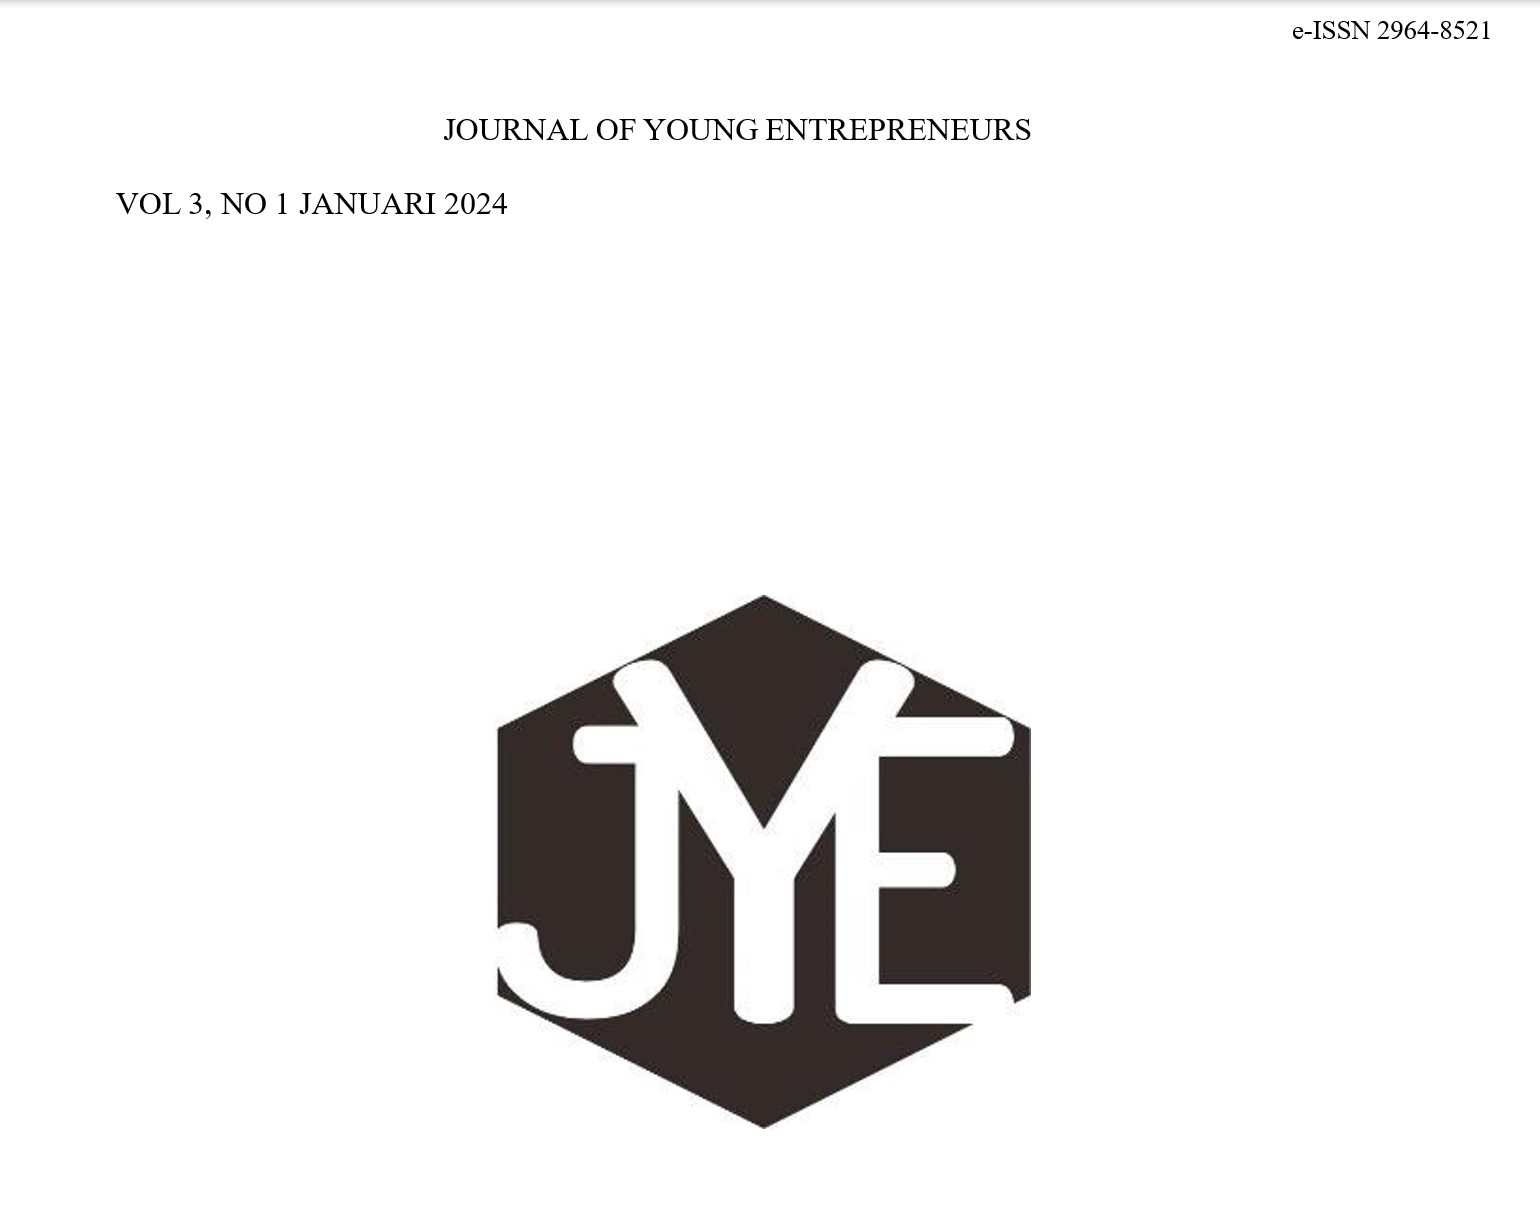 					Lihat Vol 3 No 1 (2024): Vol 3 No 1 (2024): Journal of Young Entrepreneurs Vol 3 No 1 Januari 2024
				